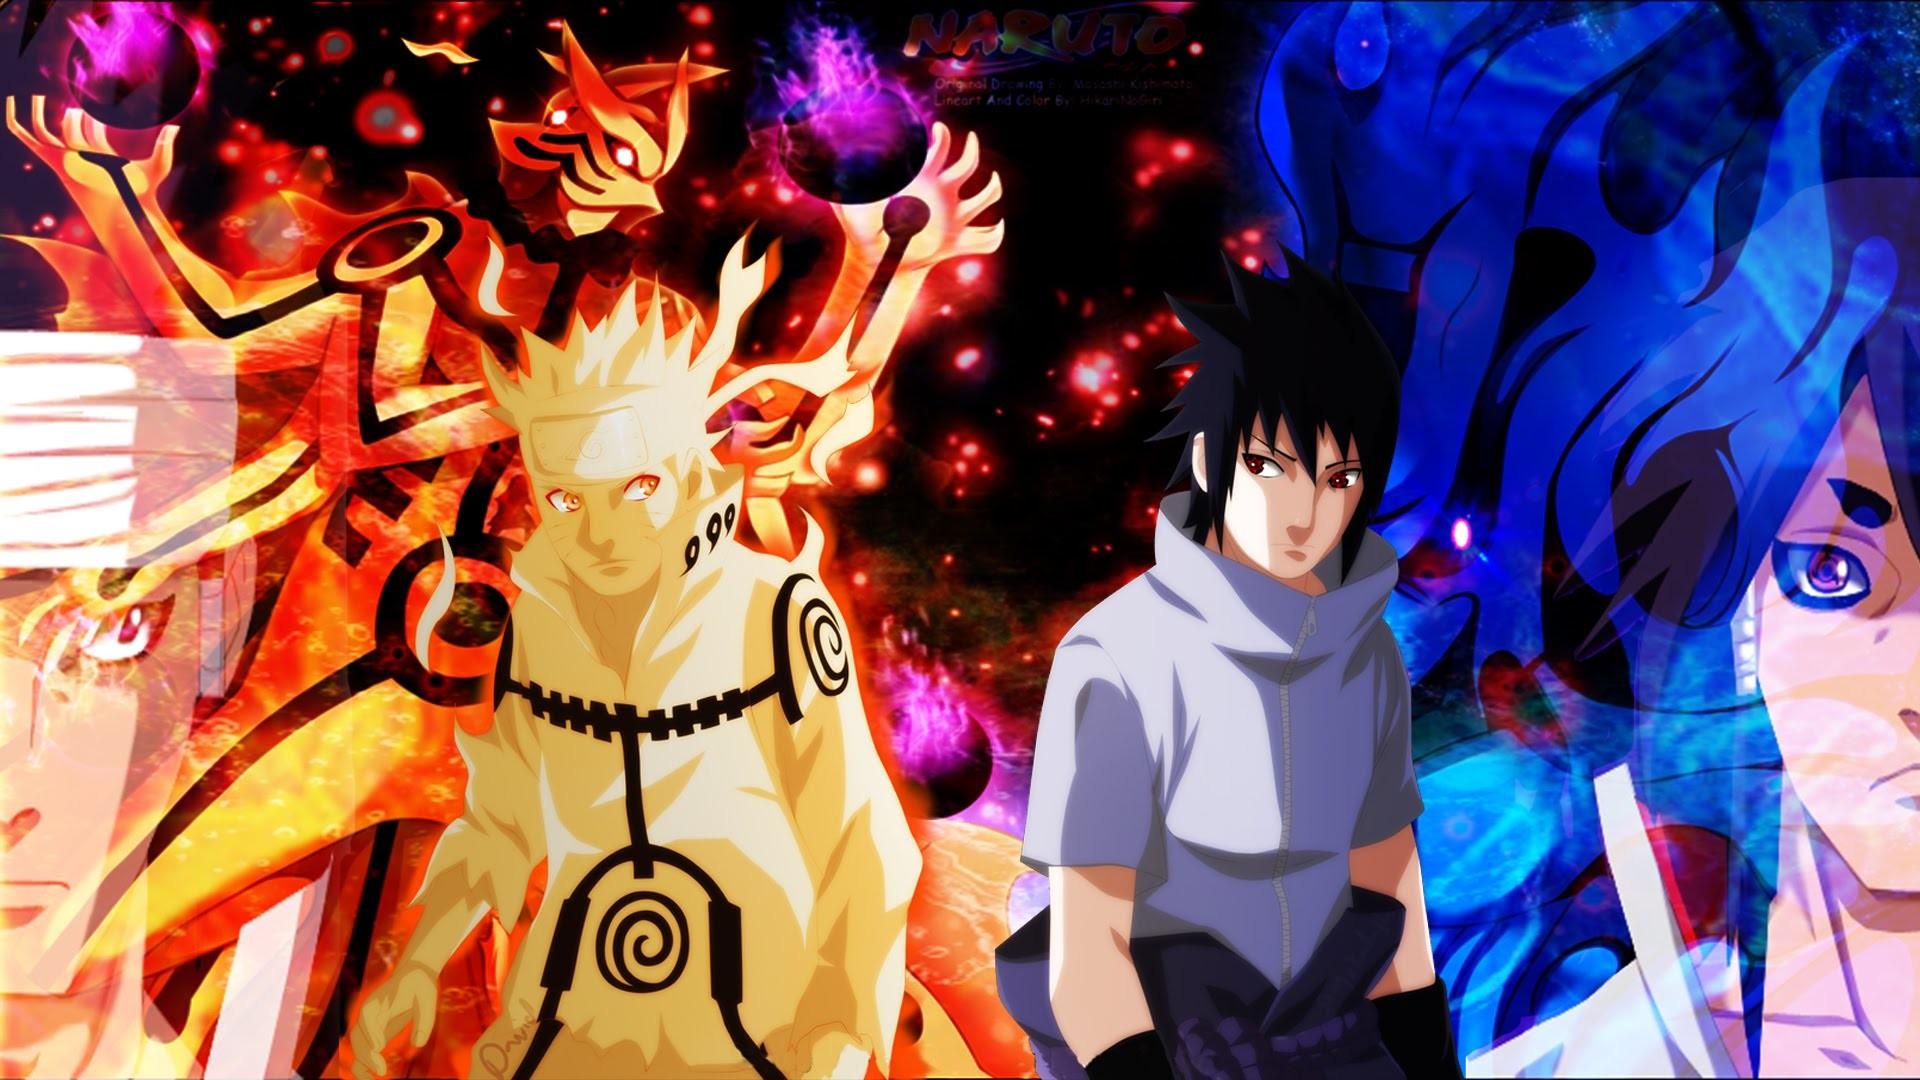 Anime Naruto And Sasuke Wallpapers - Wallpaper Cave